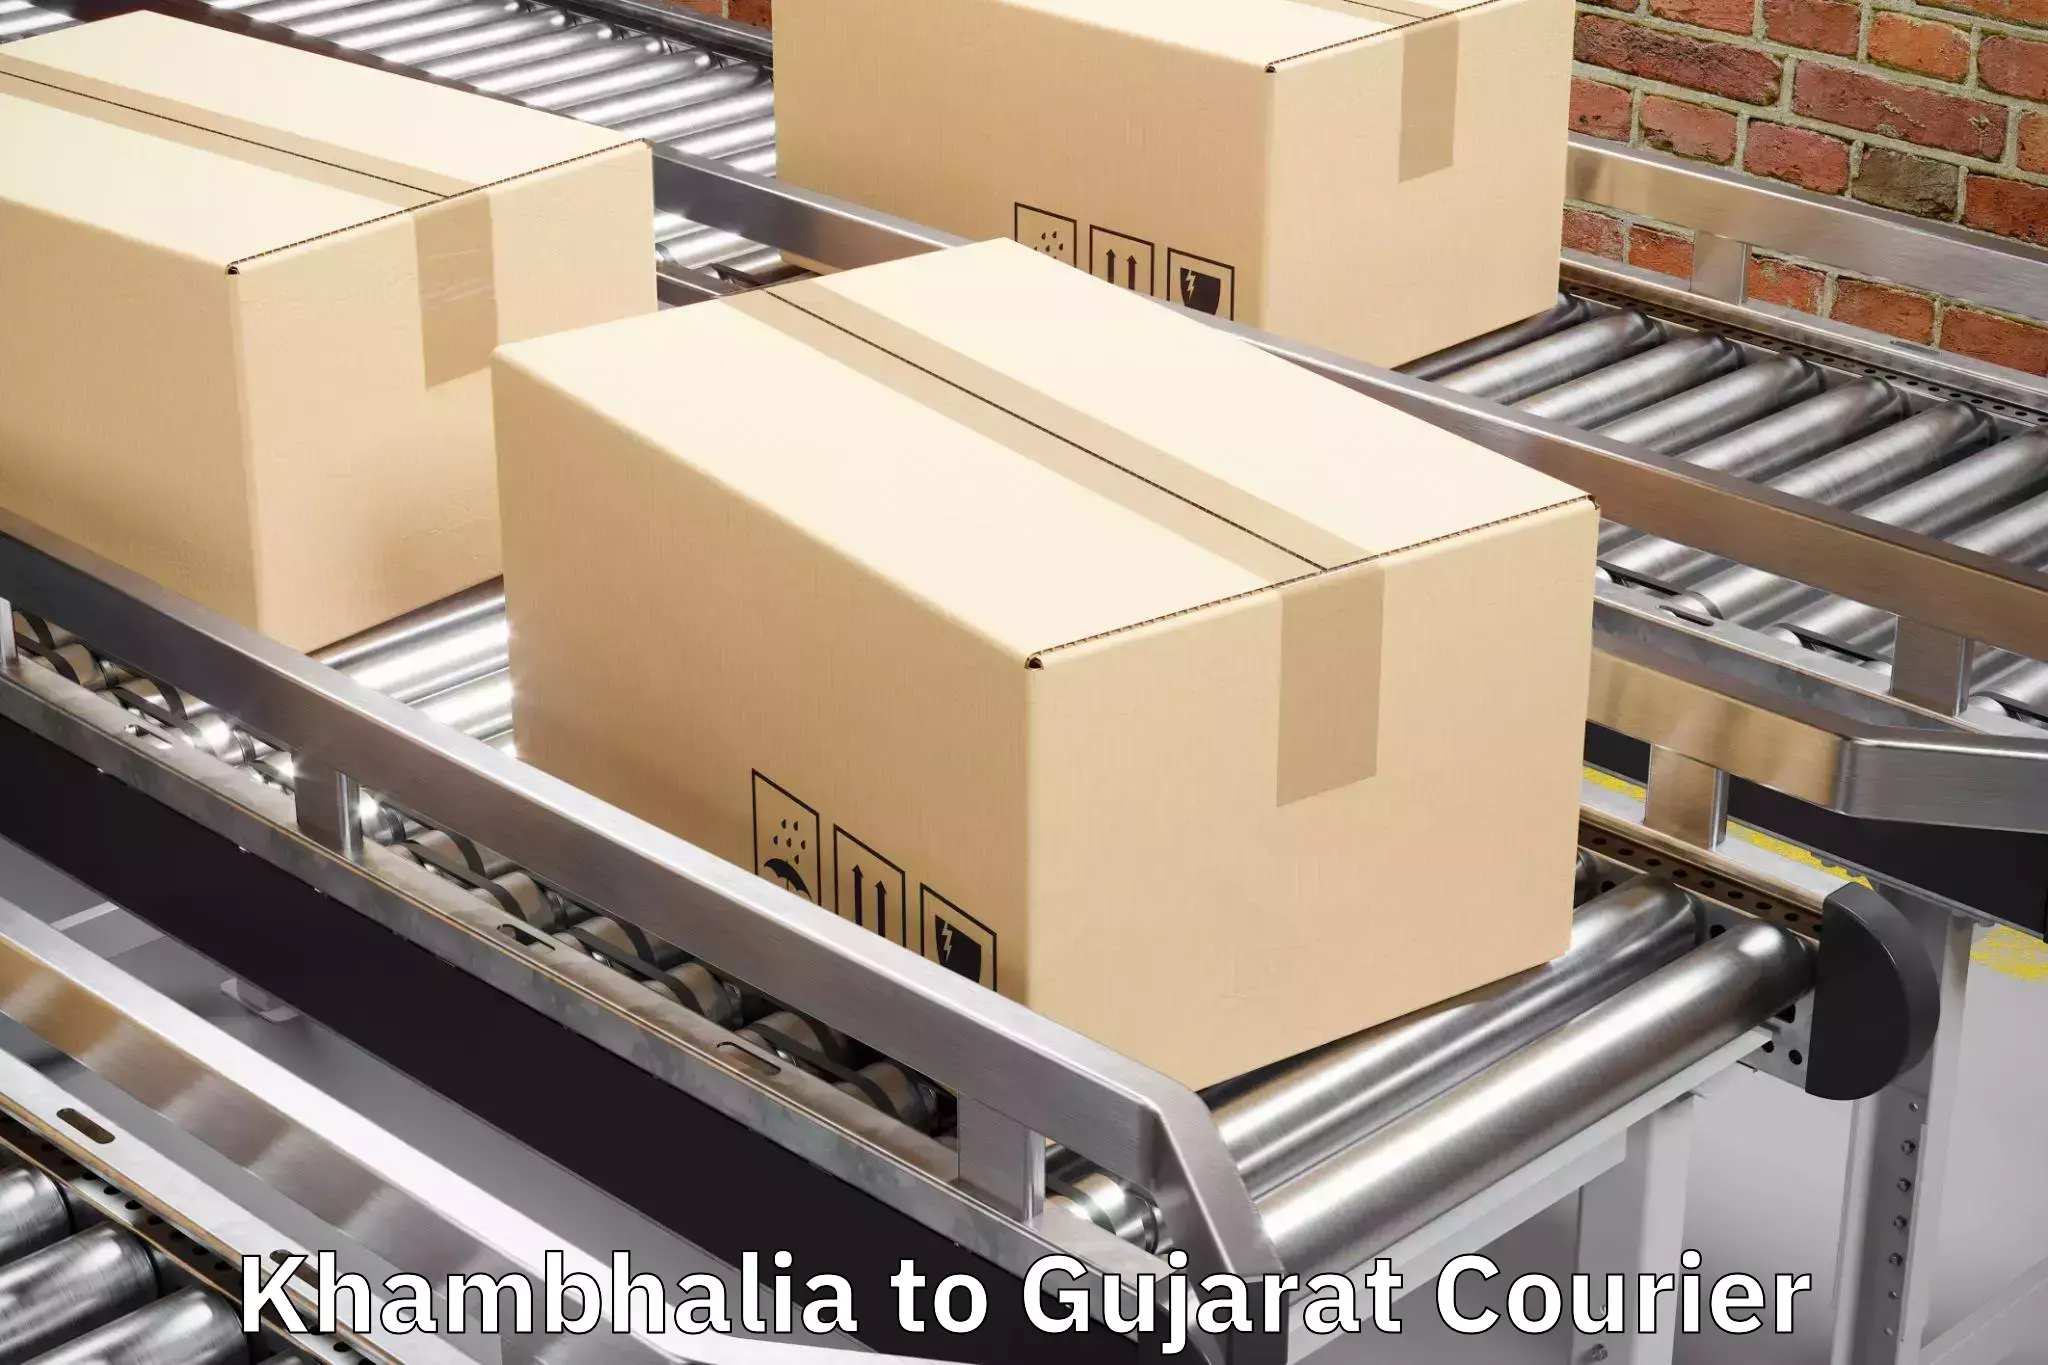 Baggage delivery support Khambhalia to Wankaner